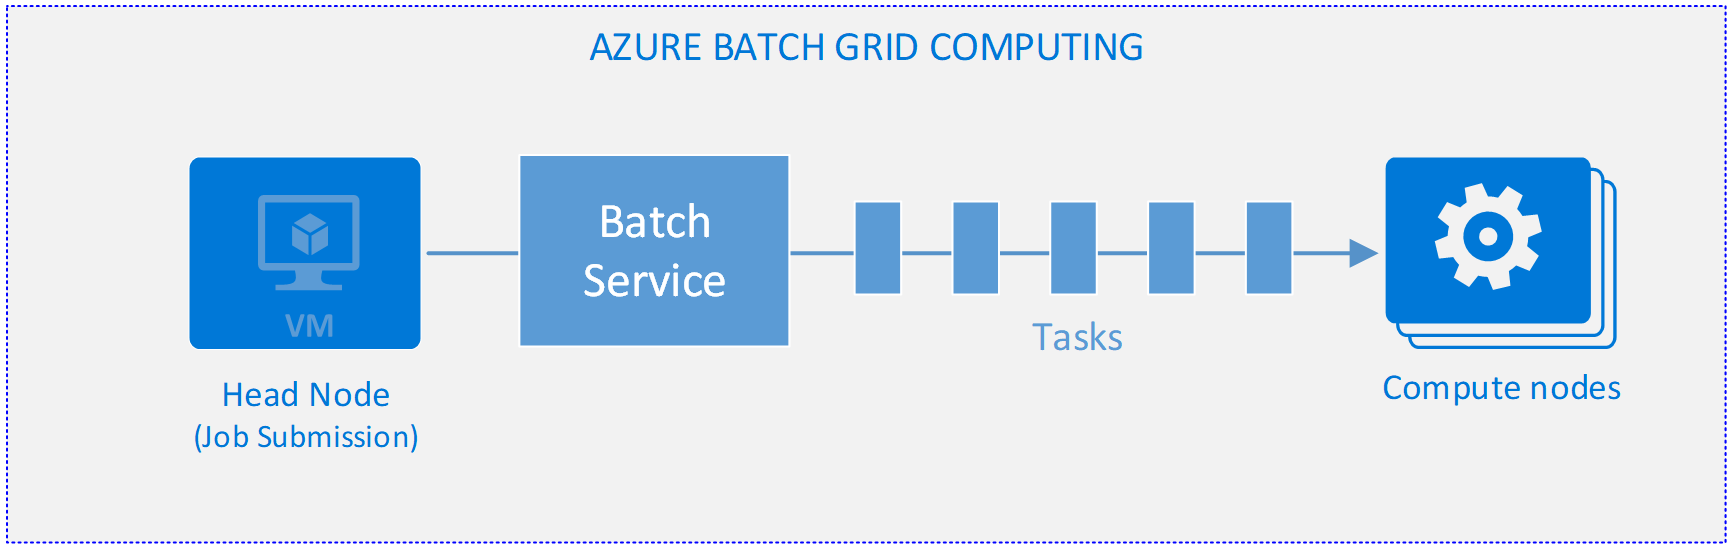 Ein Diagramm, das Azure Batch Grid Computing veranschaulicht.